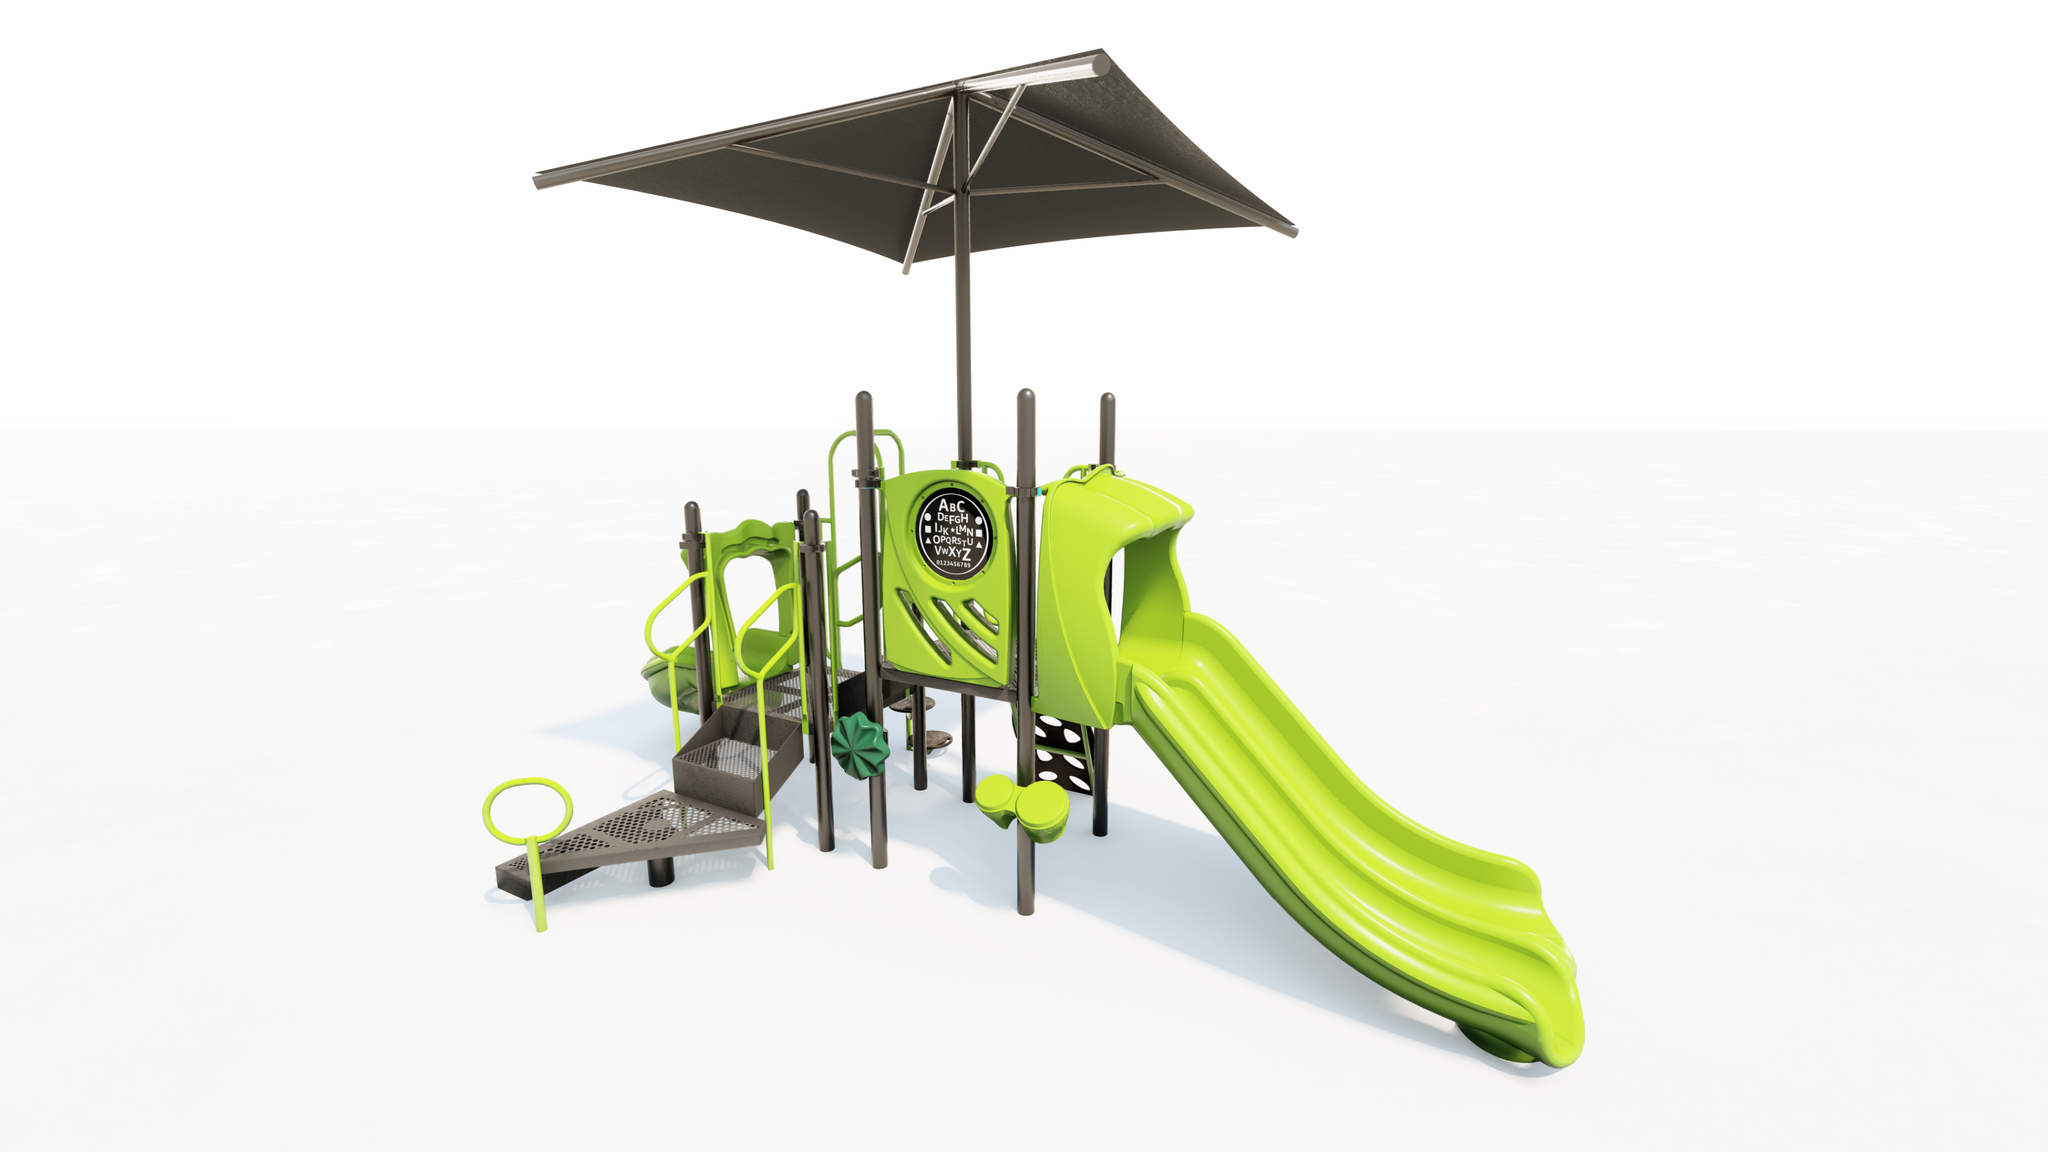 Playground Equipment Set with Shade